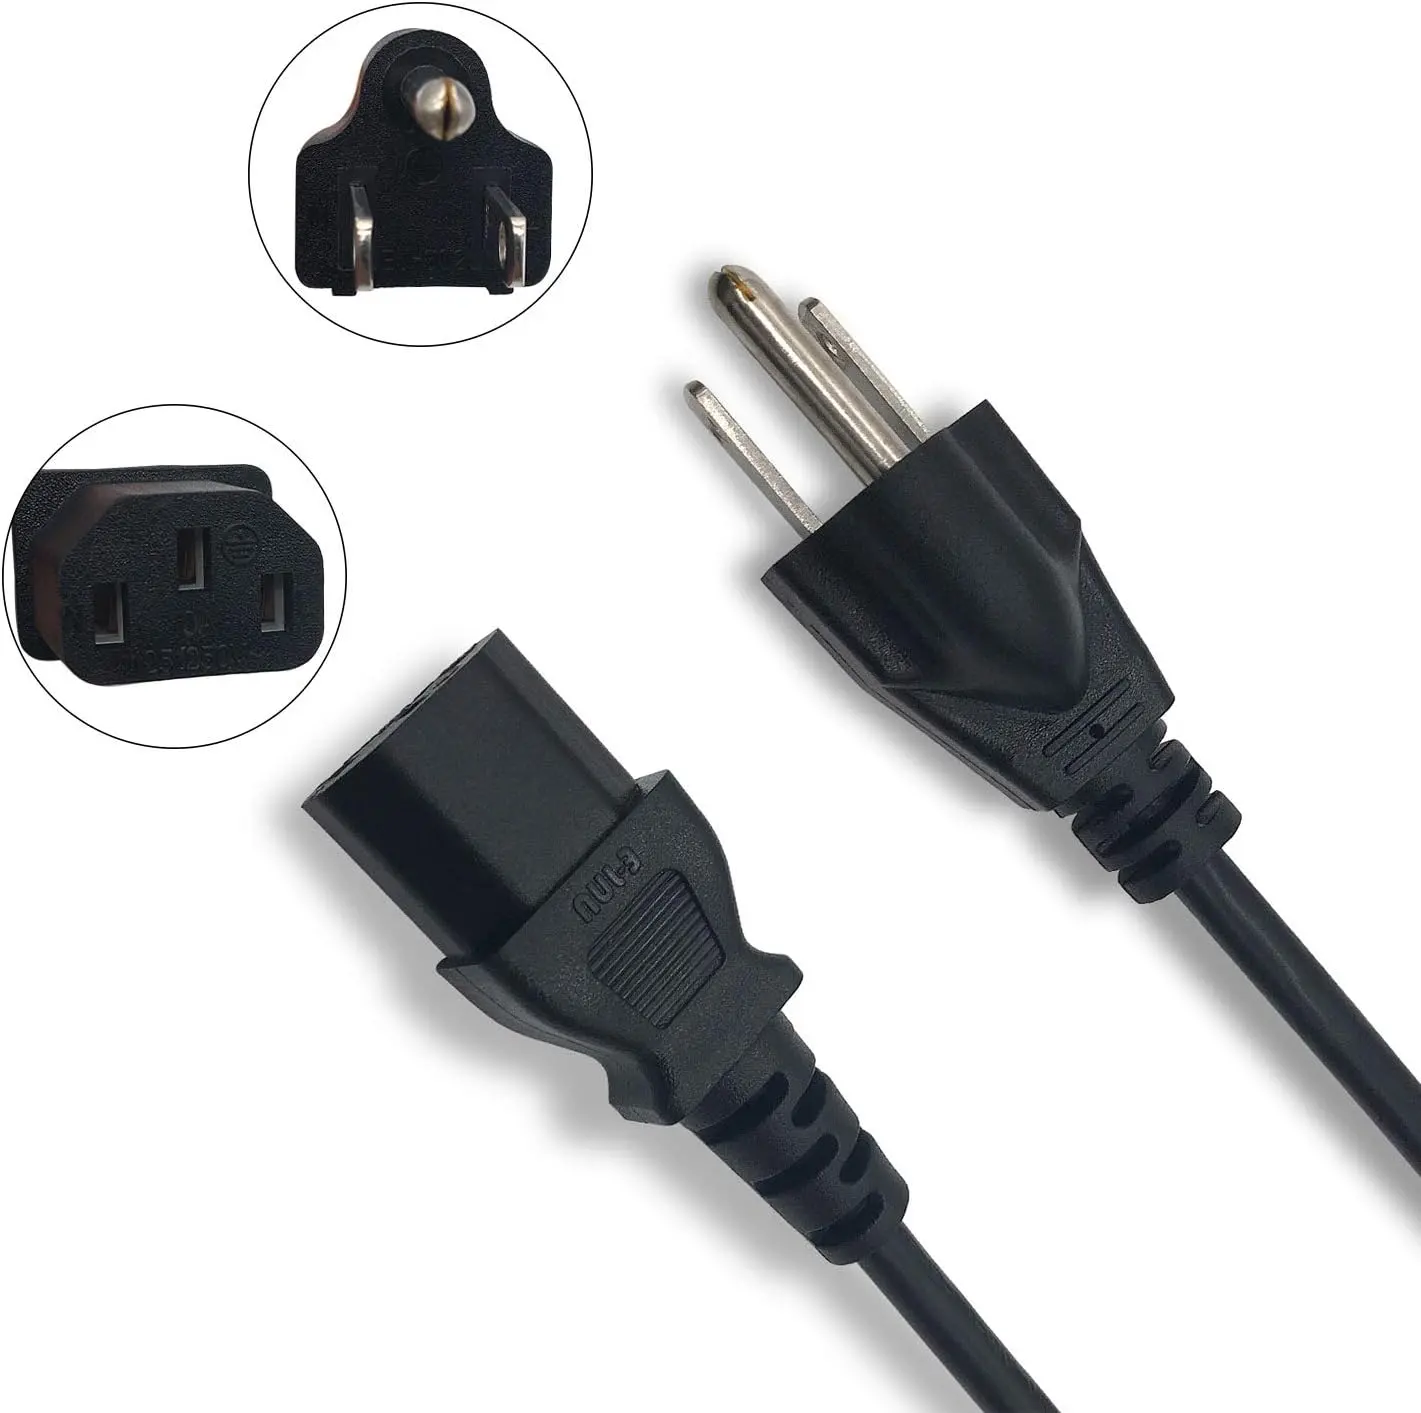 Американский стандарт США шнур питания переменного тока бесплатный образец 3-контактный штекер США 3-контактный кабель питания для компьютера